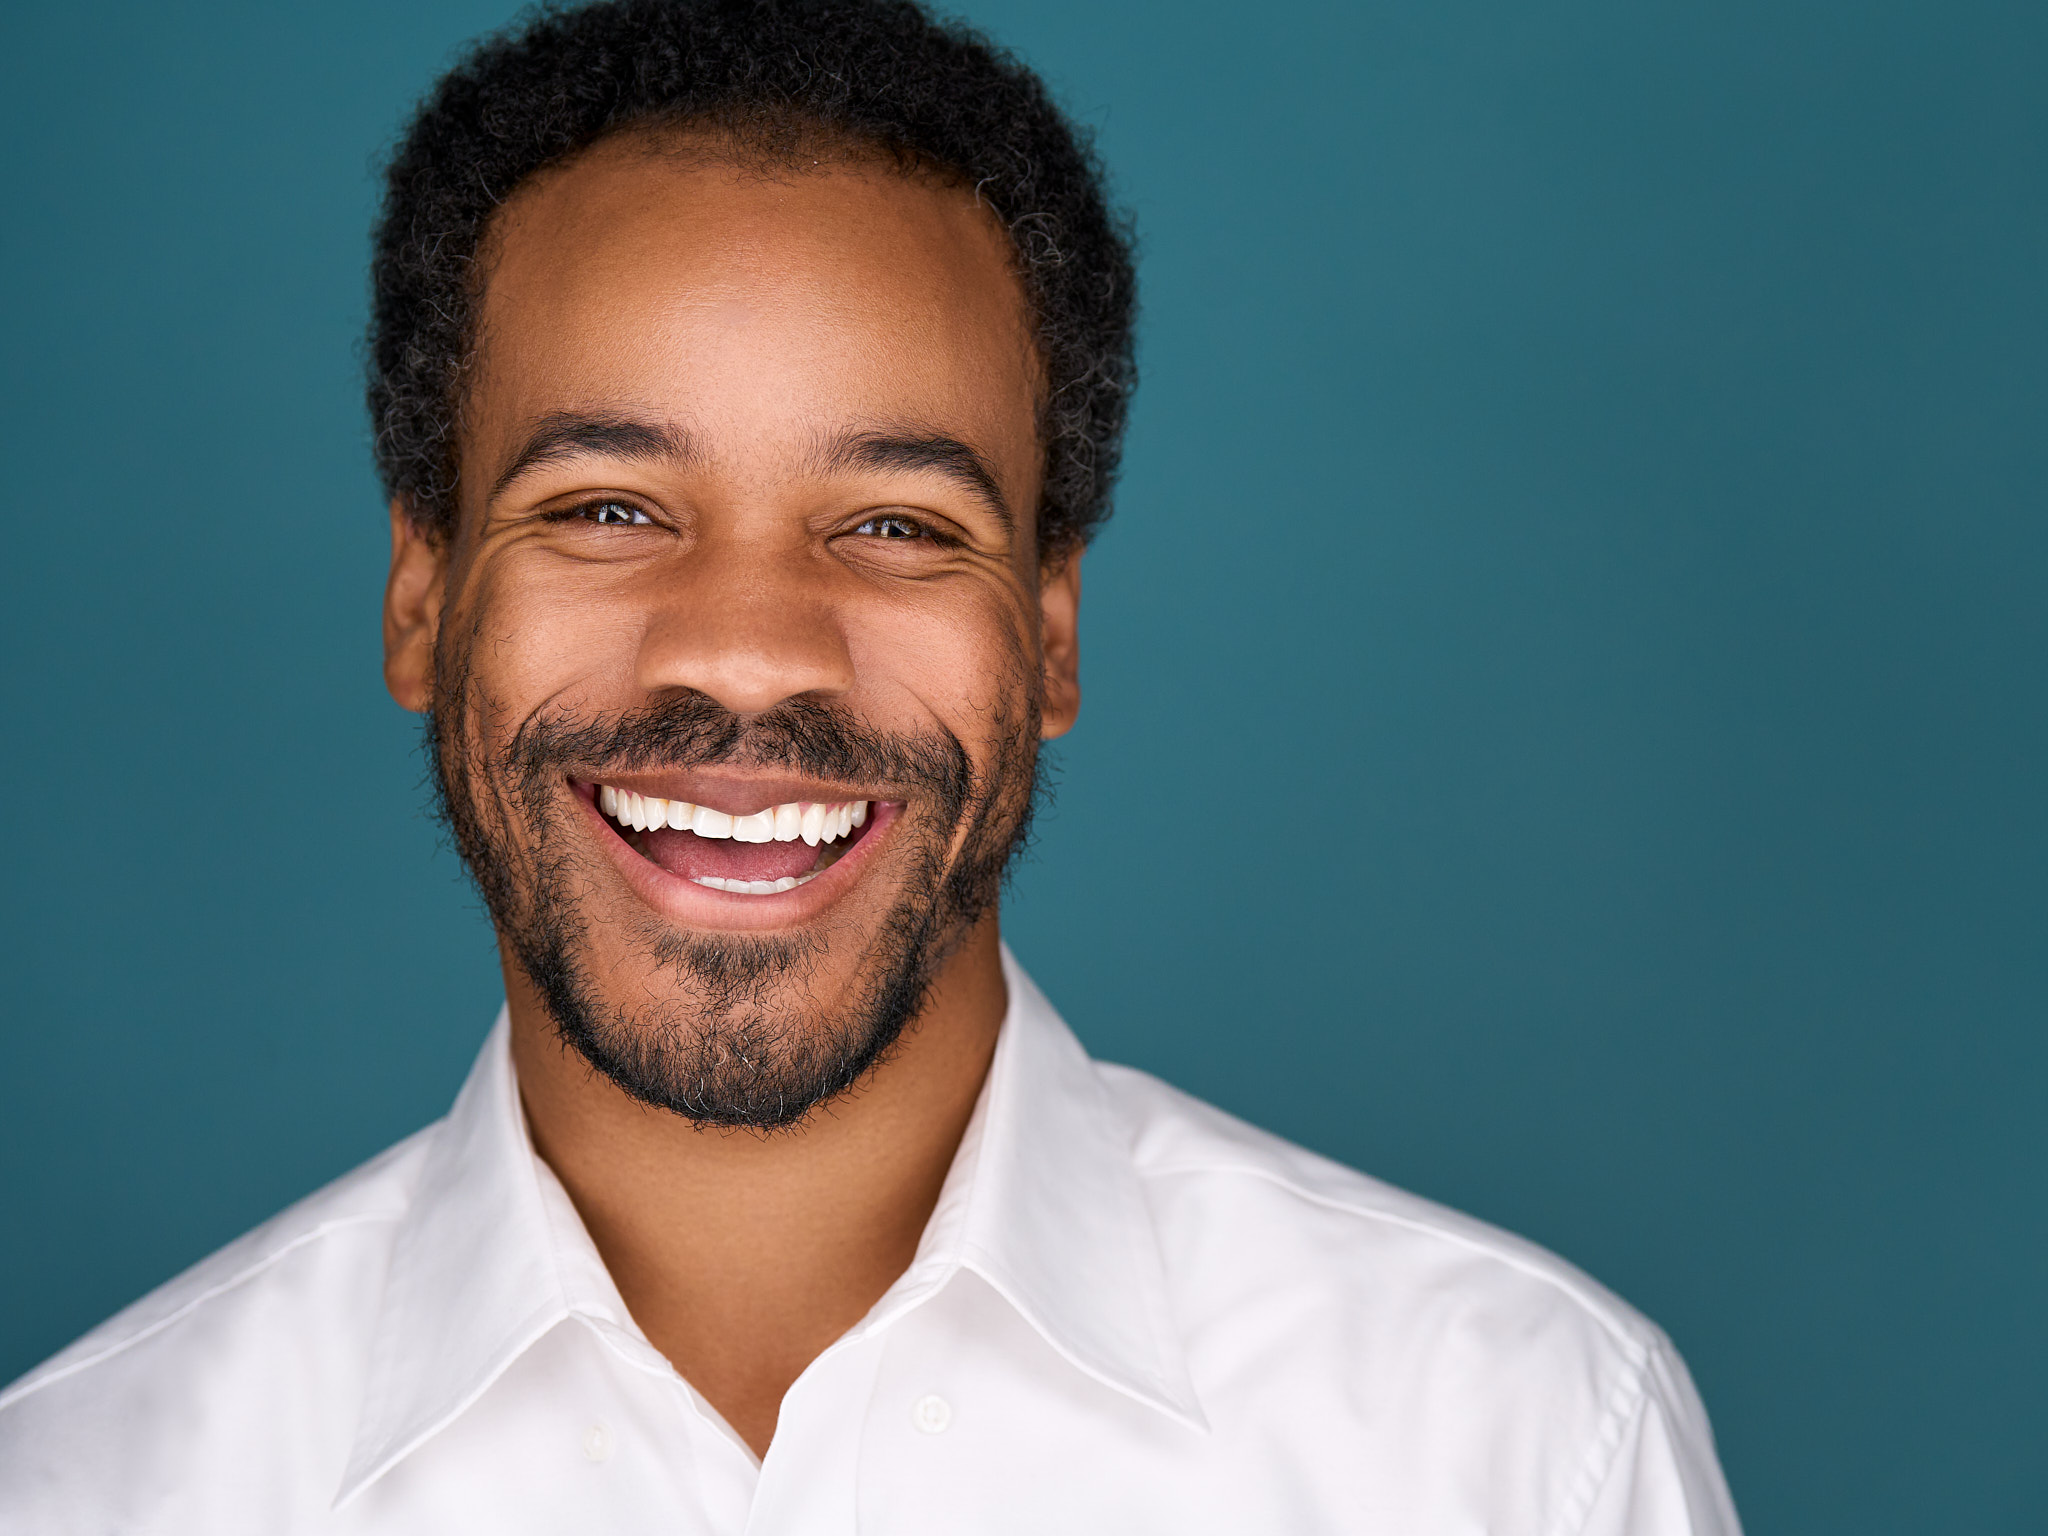 headshot of black man smiling